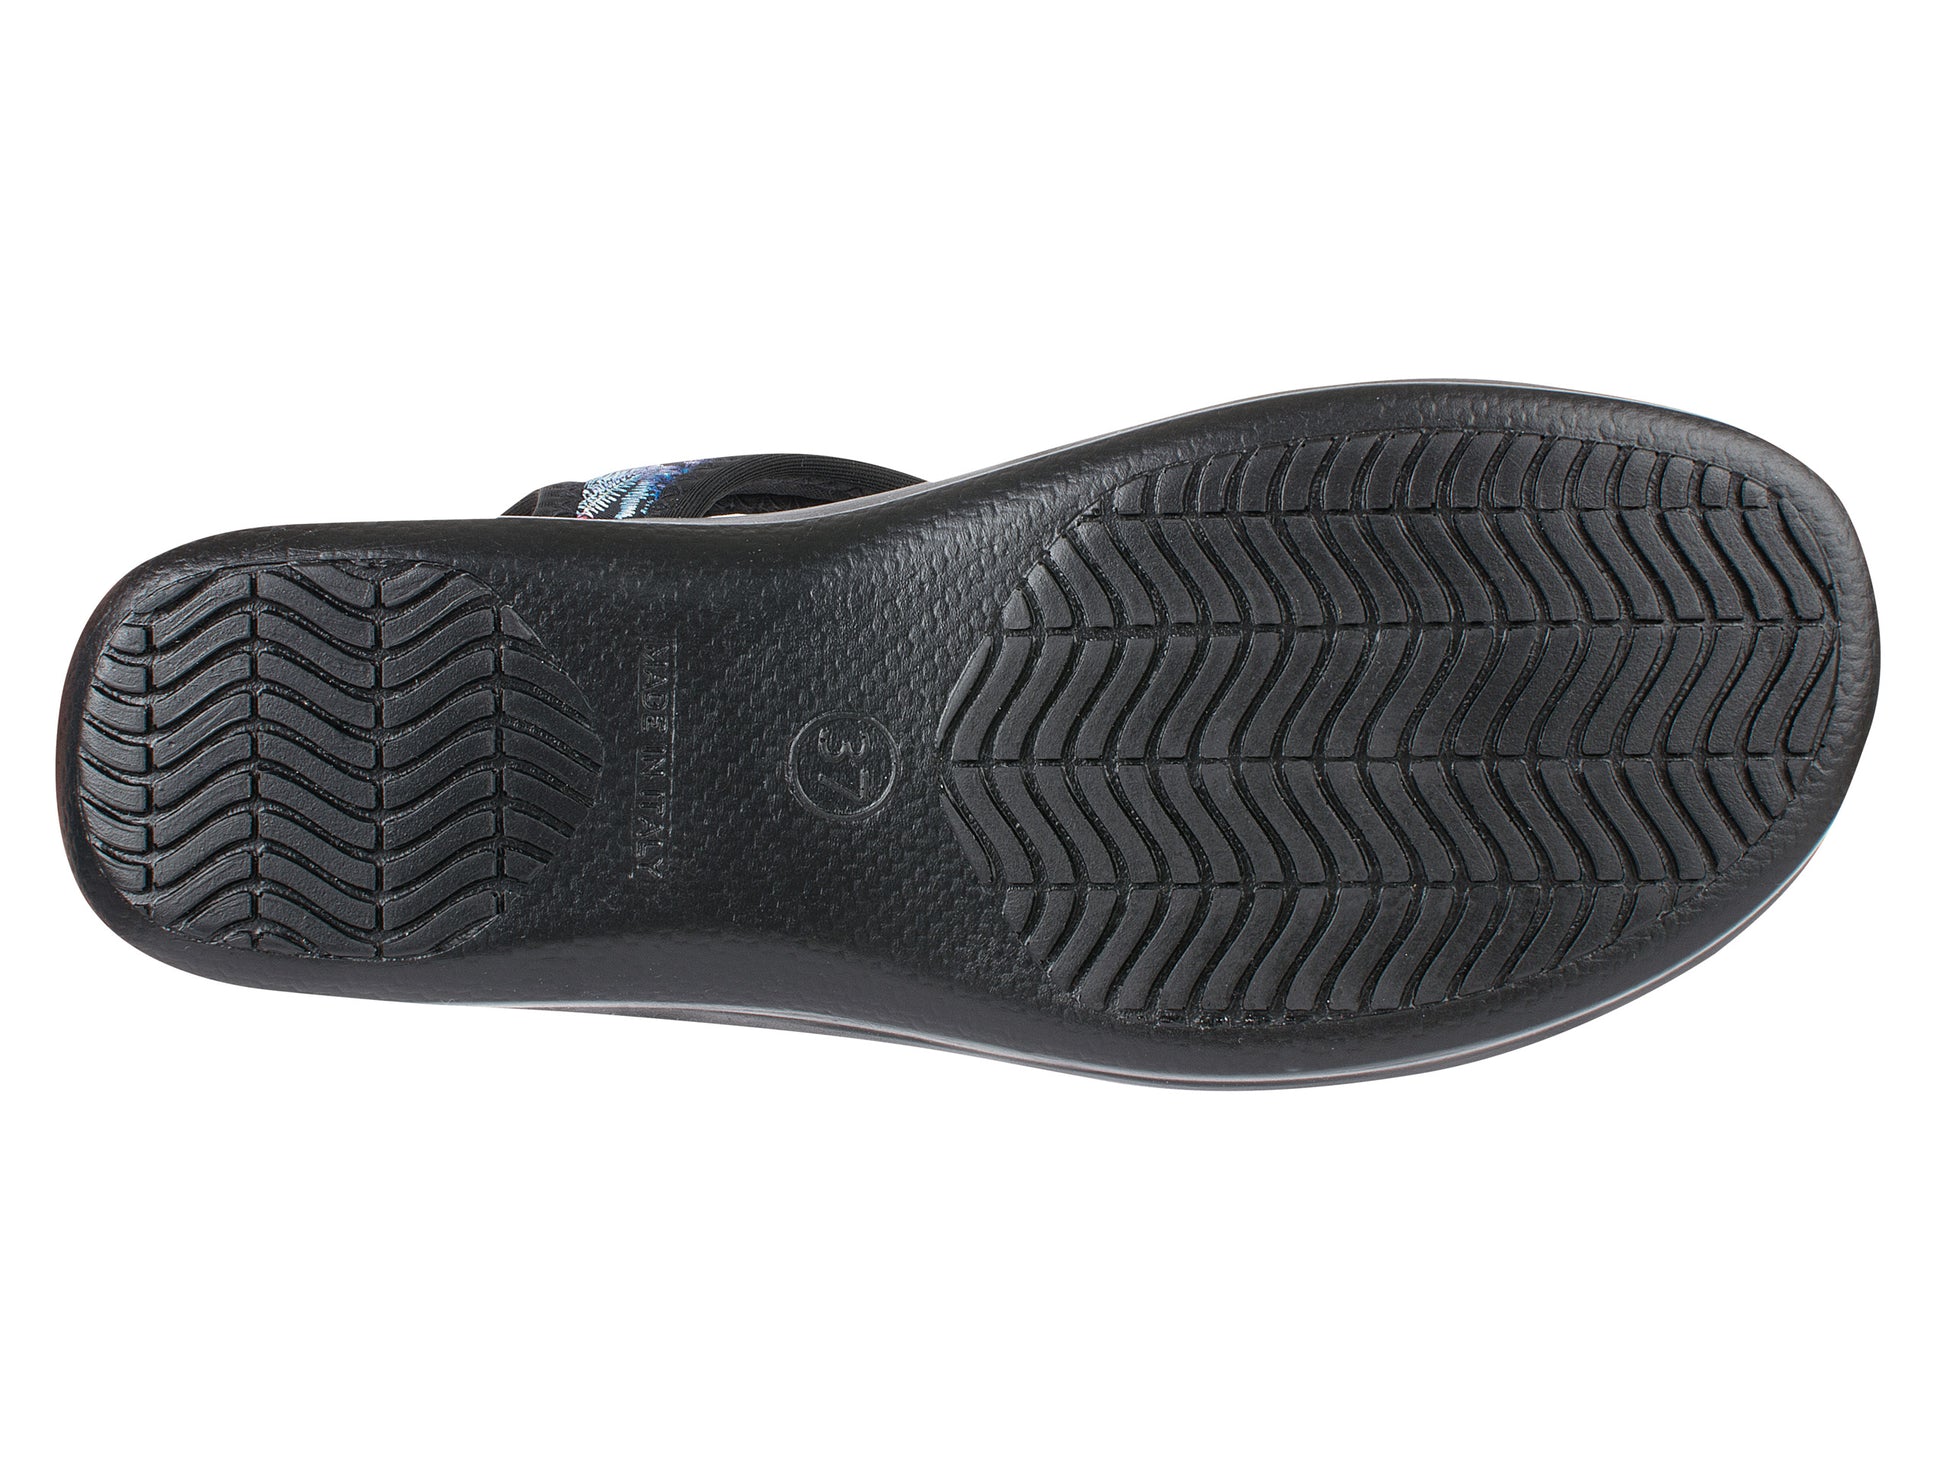 Die Schuhsohle der Damen Stretch Sandalette Modell Stretch 05 von Aerosoft in Farbe blau